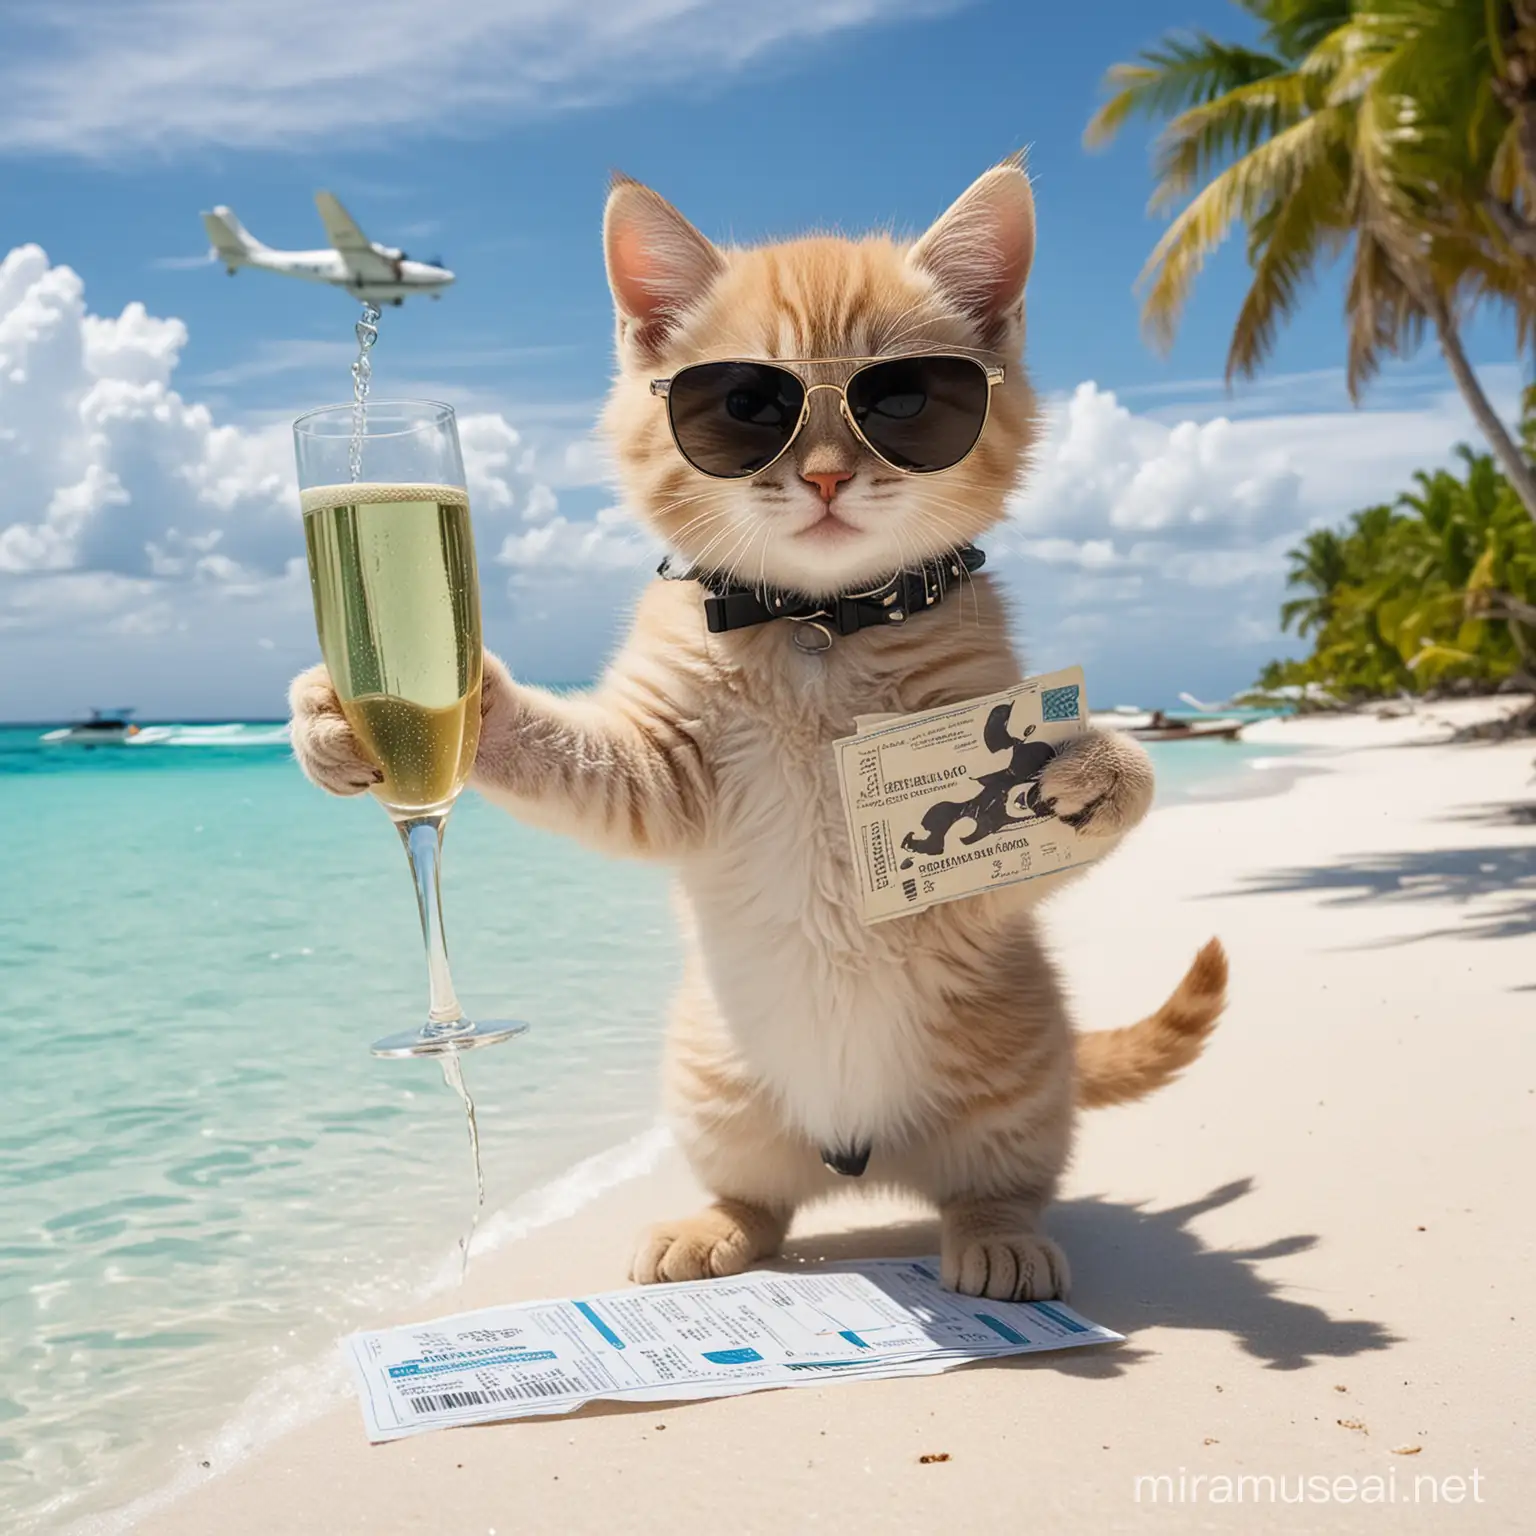 Котенок улыбается на Мальдивах на фоне голубой океан зелень в небе летит гидросамолет на земле белоснежный Баунти песочек котенок в черных солнцезащитных очках в одной лапе держит билеты во второй лапе держит бокал шампанского 